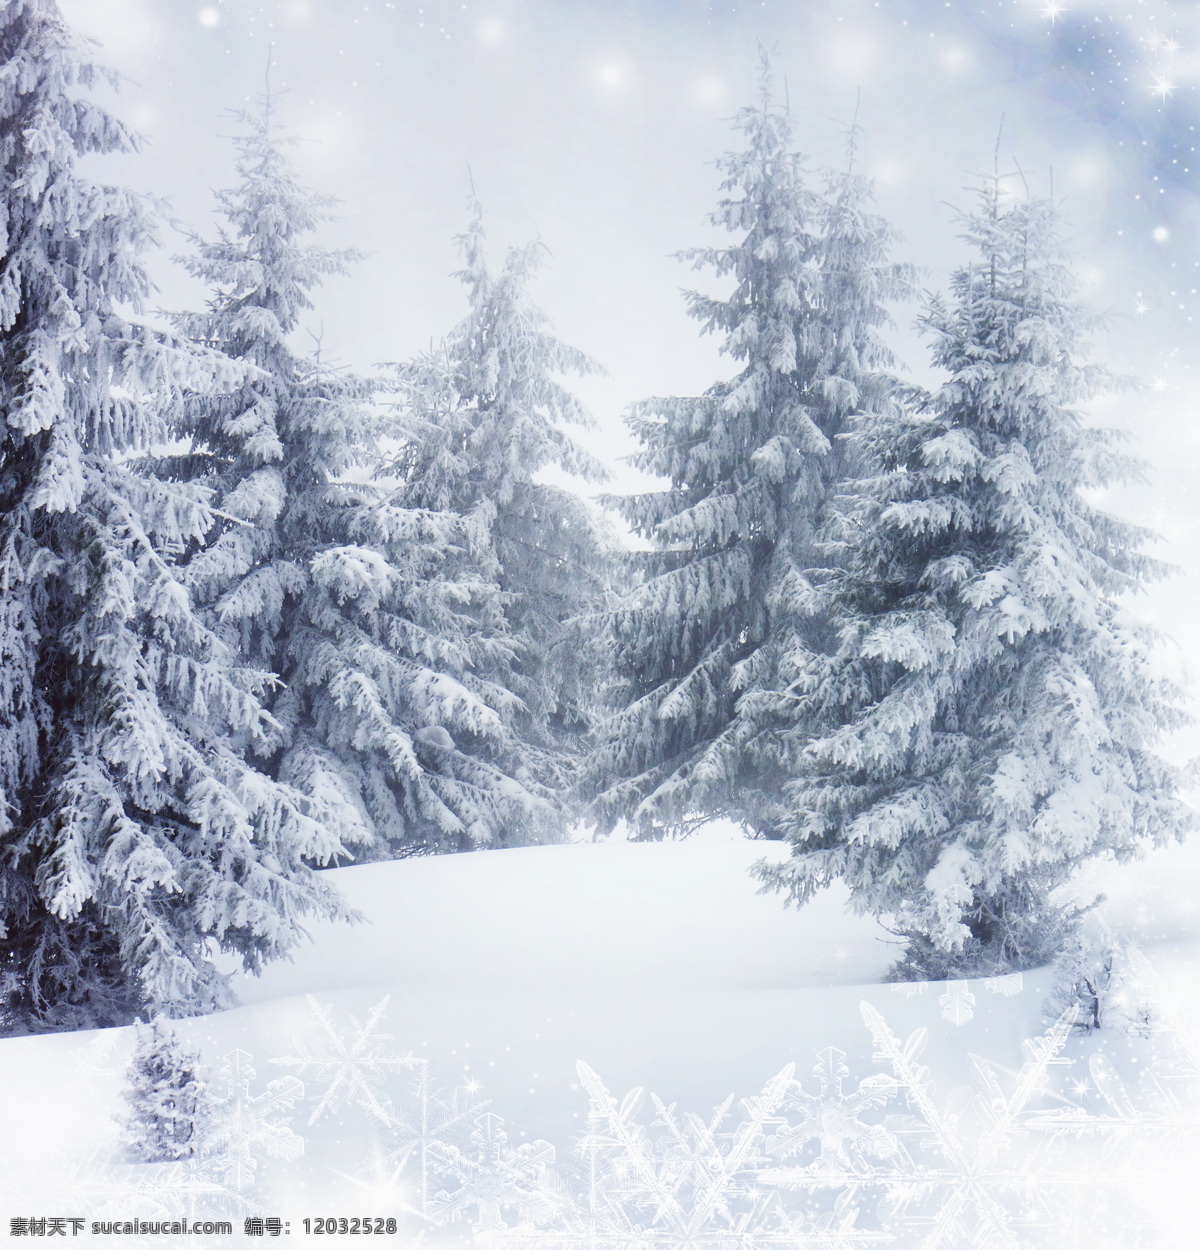 美丽 雪松 冬天风景 雪地 雪景 树林 山水风景 风景图片